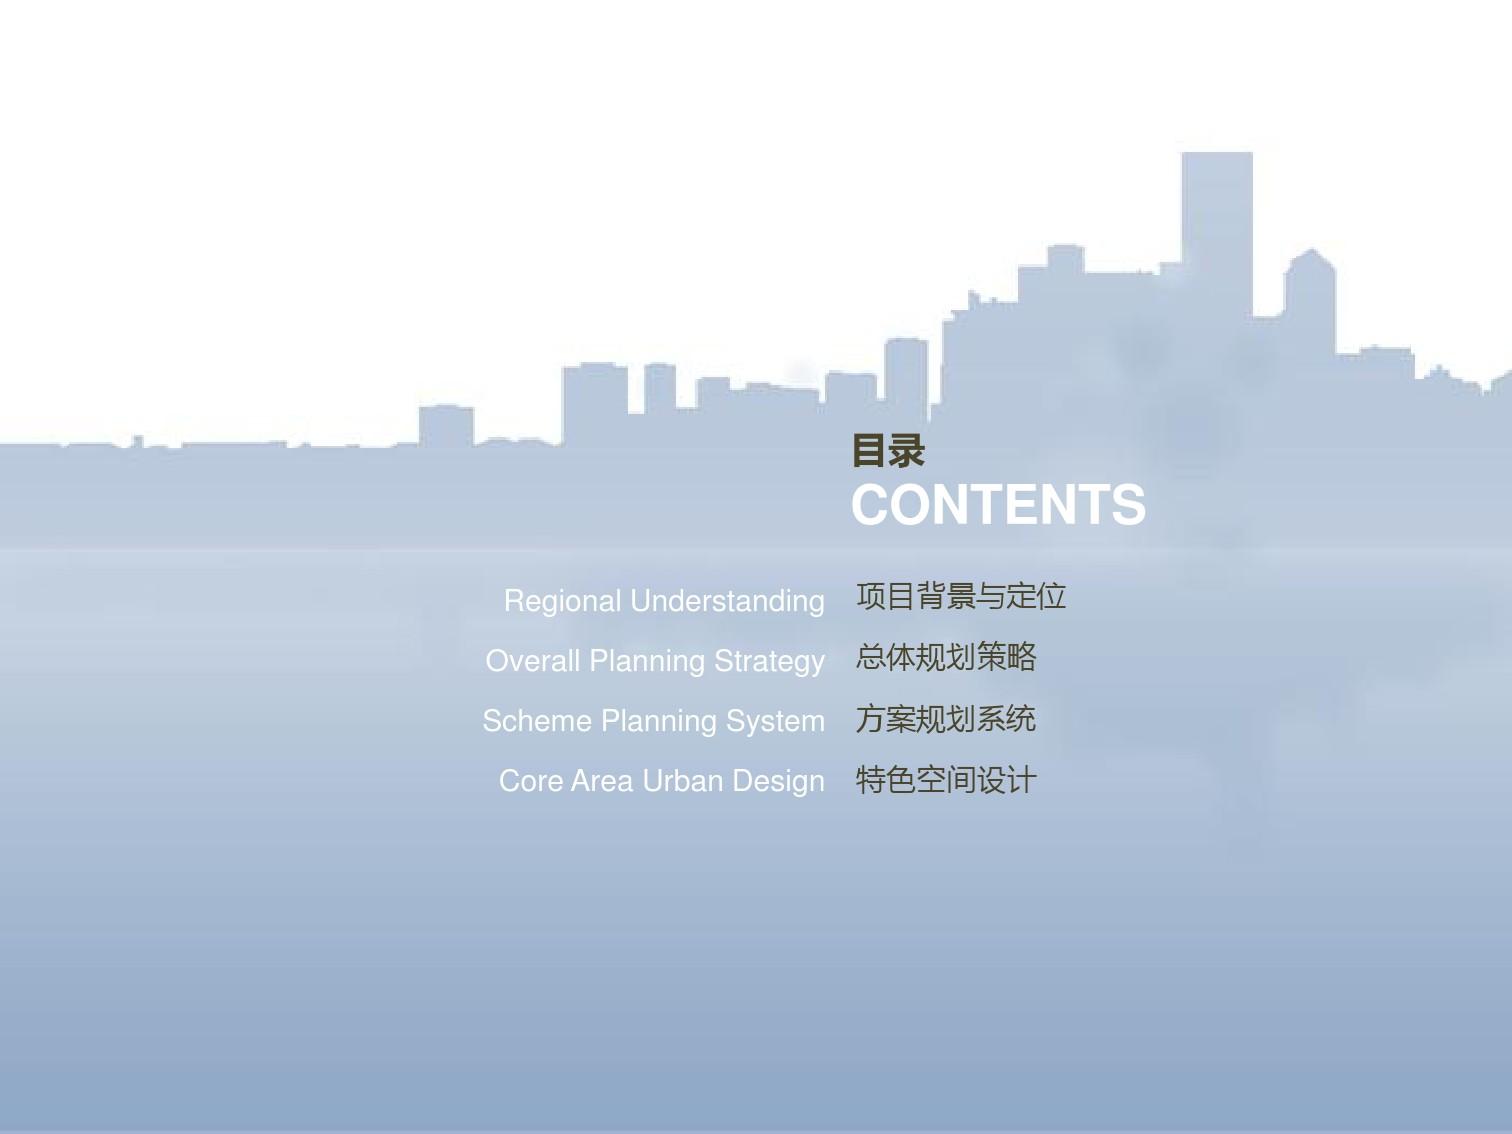 079 太原晋阳湖总体规划城市设计